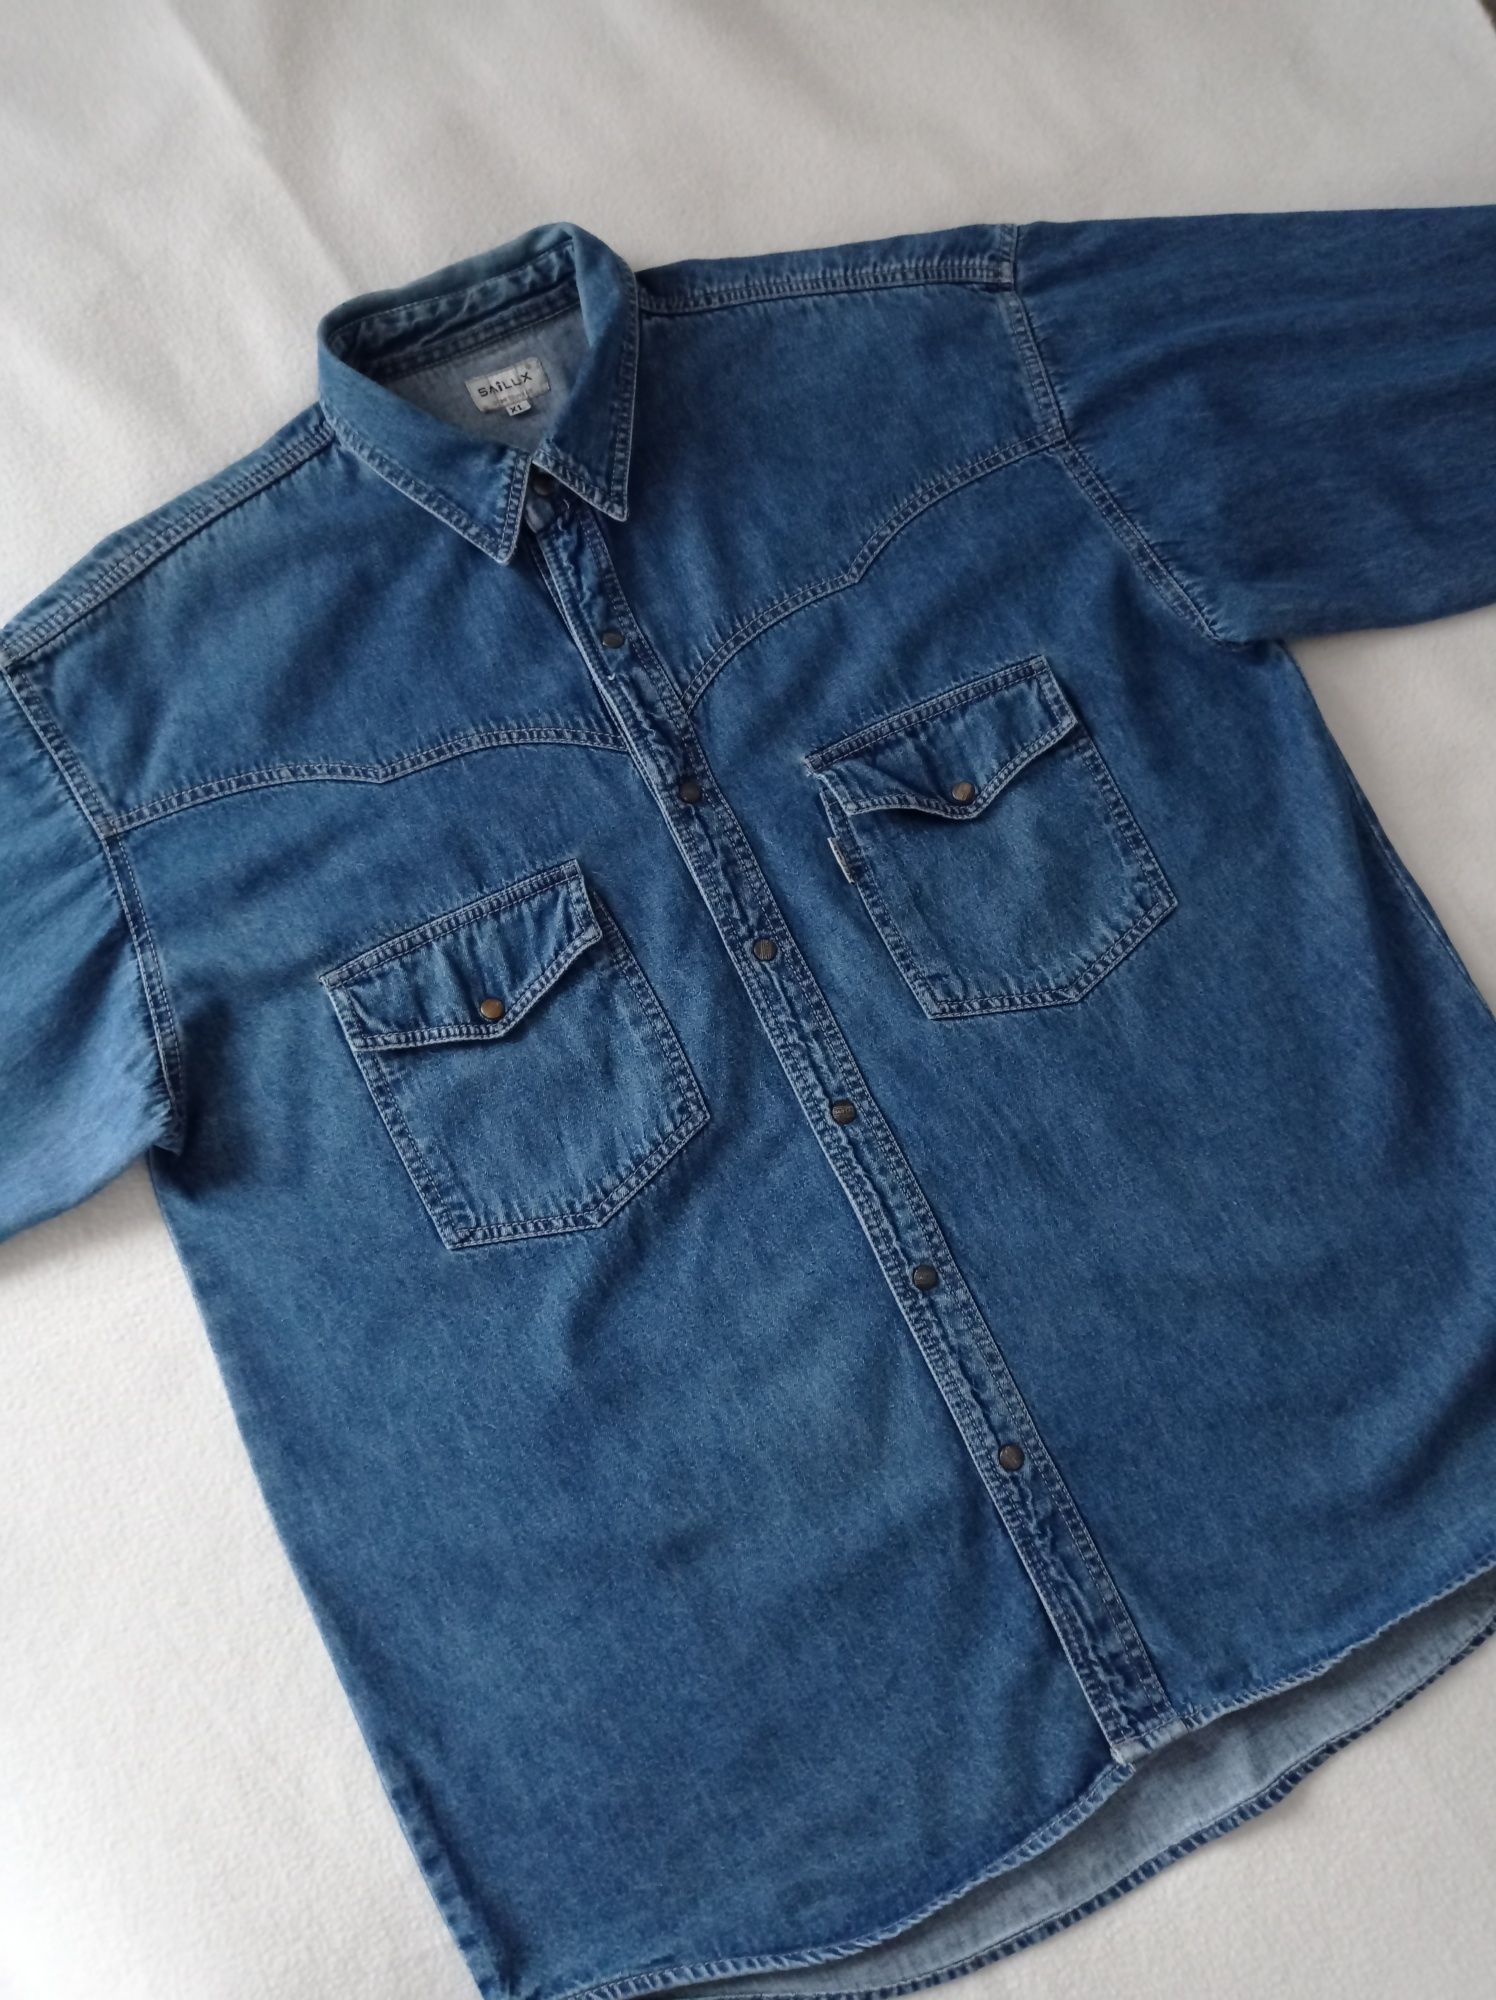 Koszula męska jeansowa SAILUX 42/XL